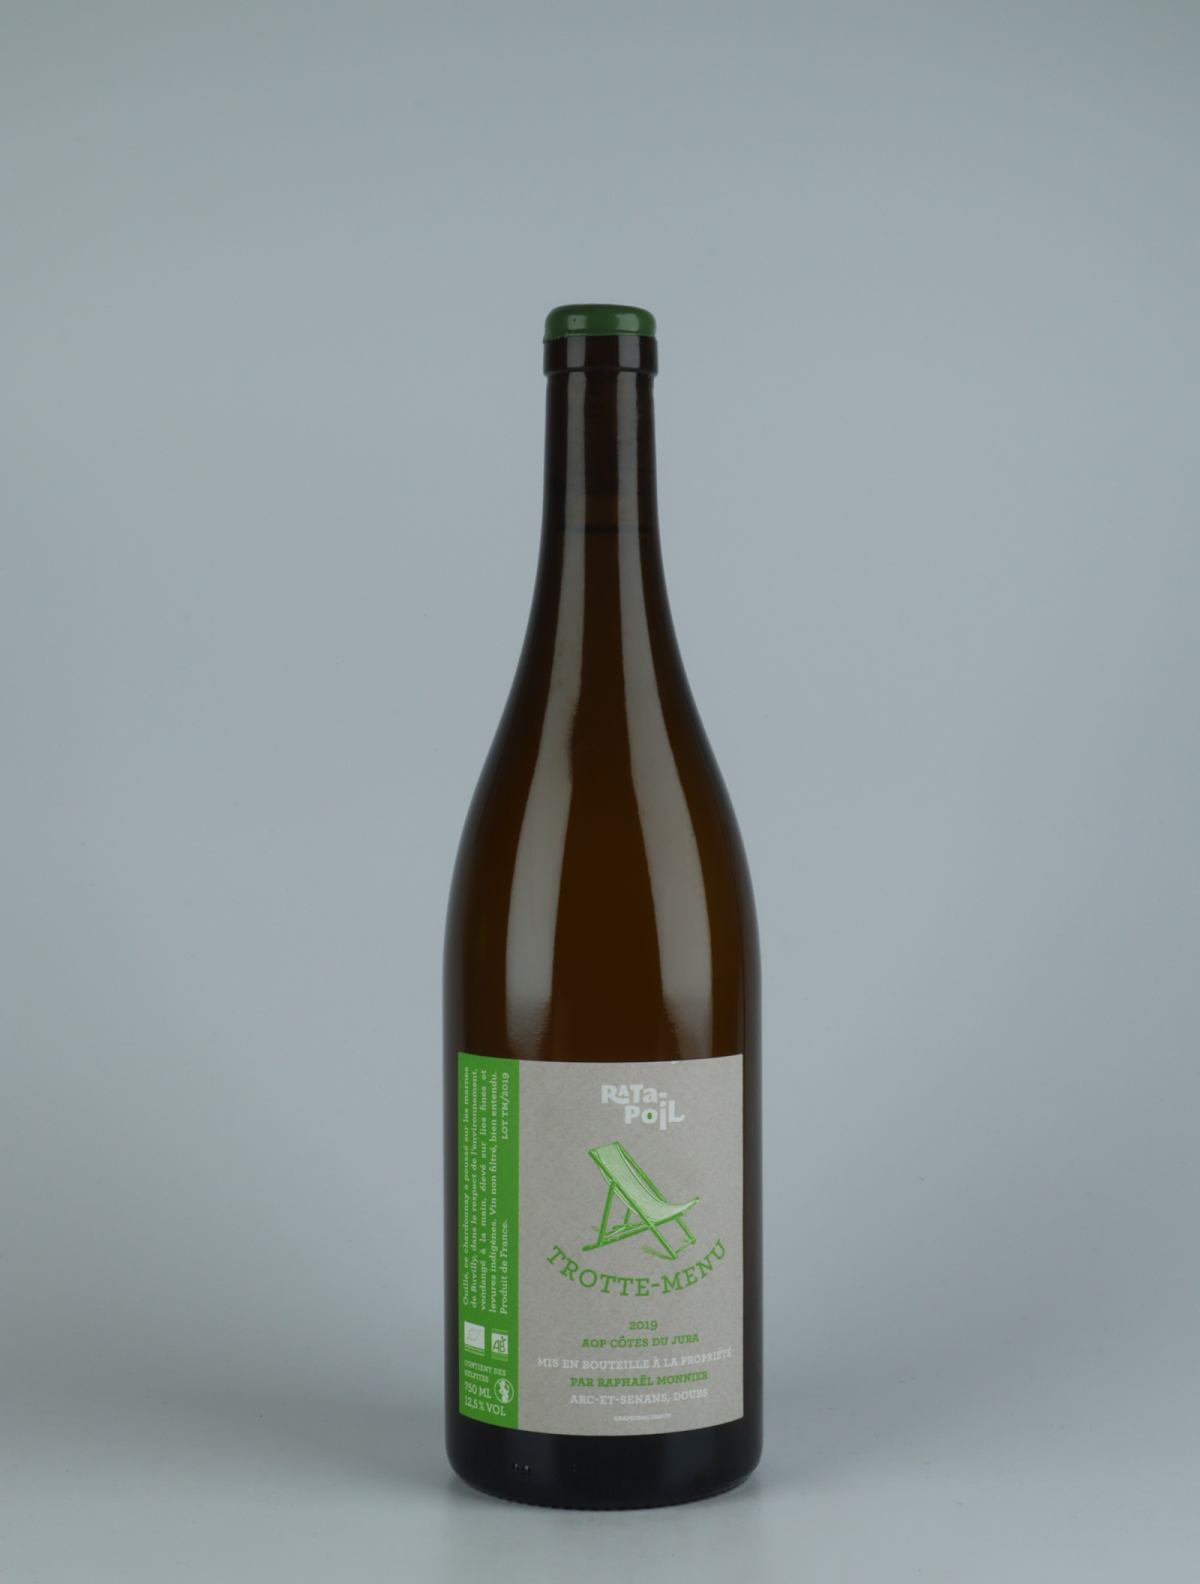 En flaske 2019 Trotte Menu Hvidvin fra Domaine Ratapoil, Jura i Frankrig